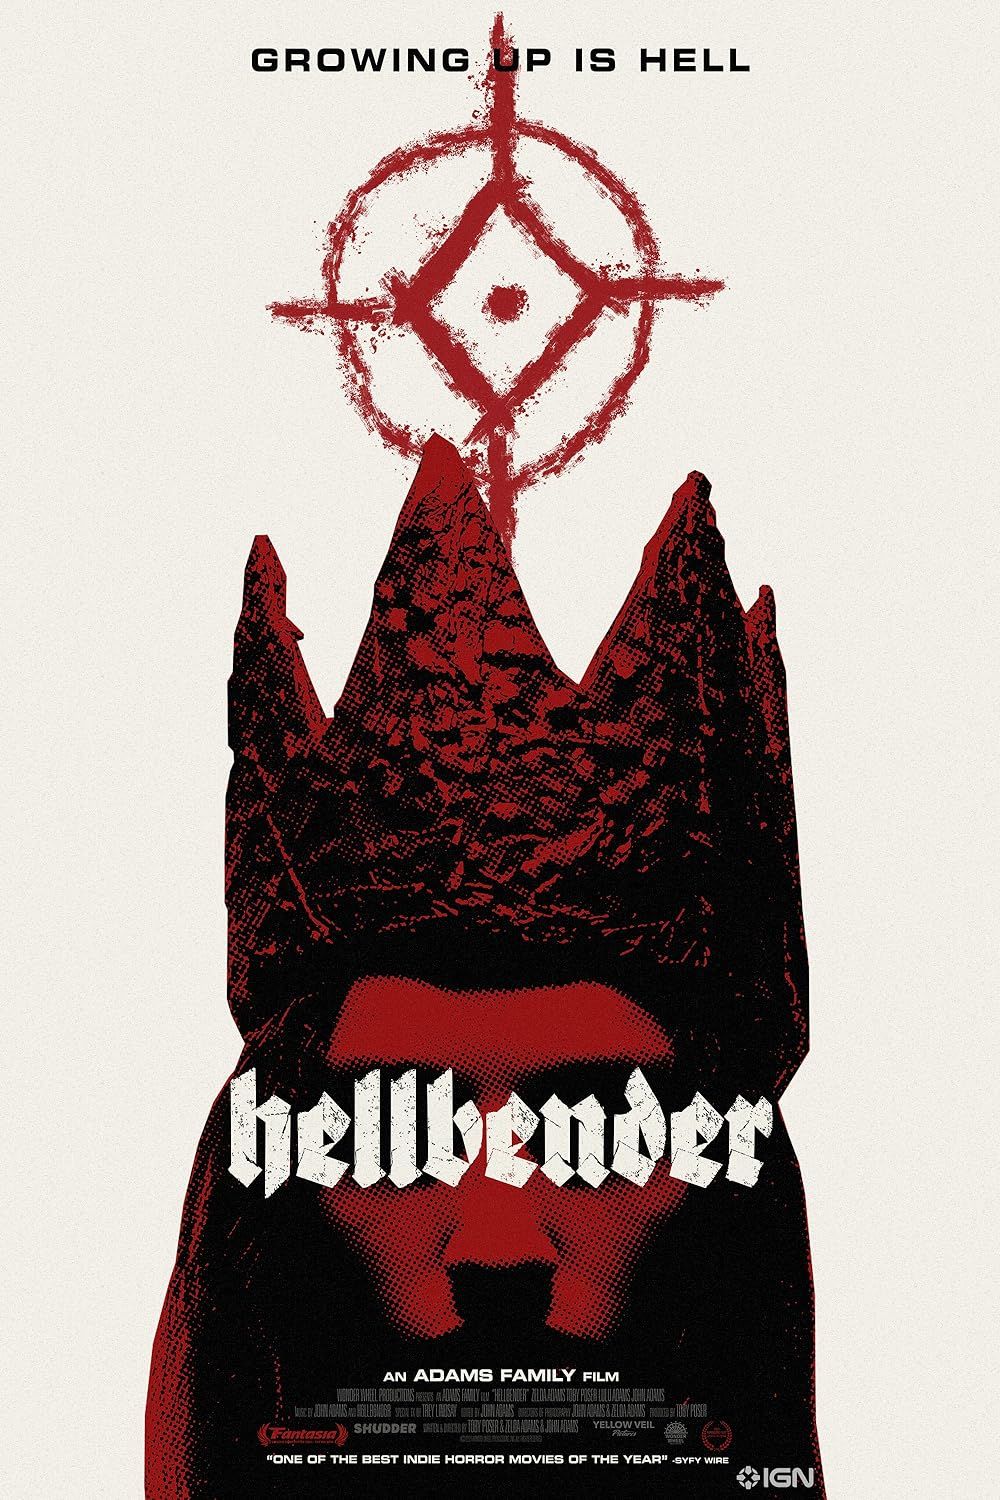 Zelda Adams Wearing a Makeshift Crown on the Hellbender Movie Poster